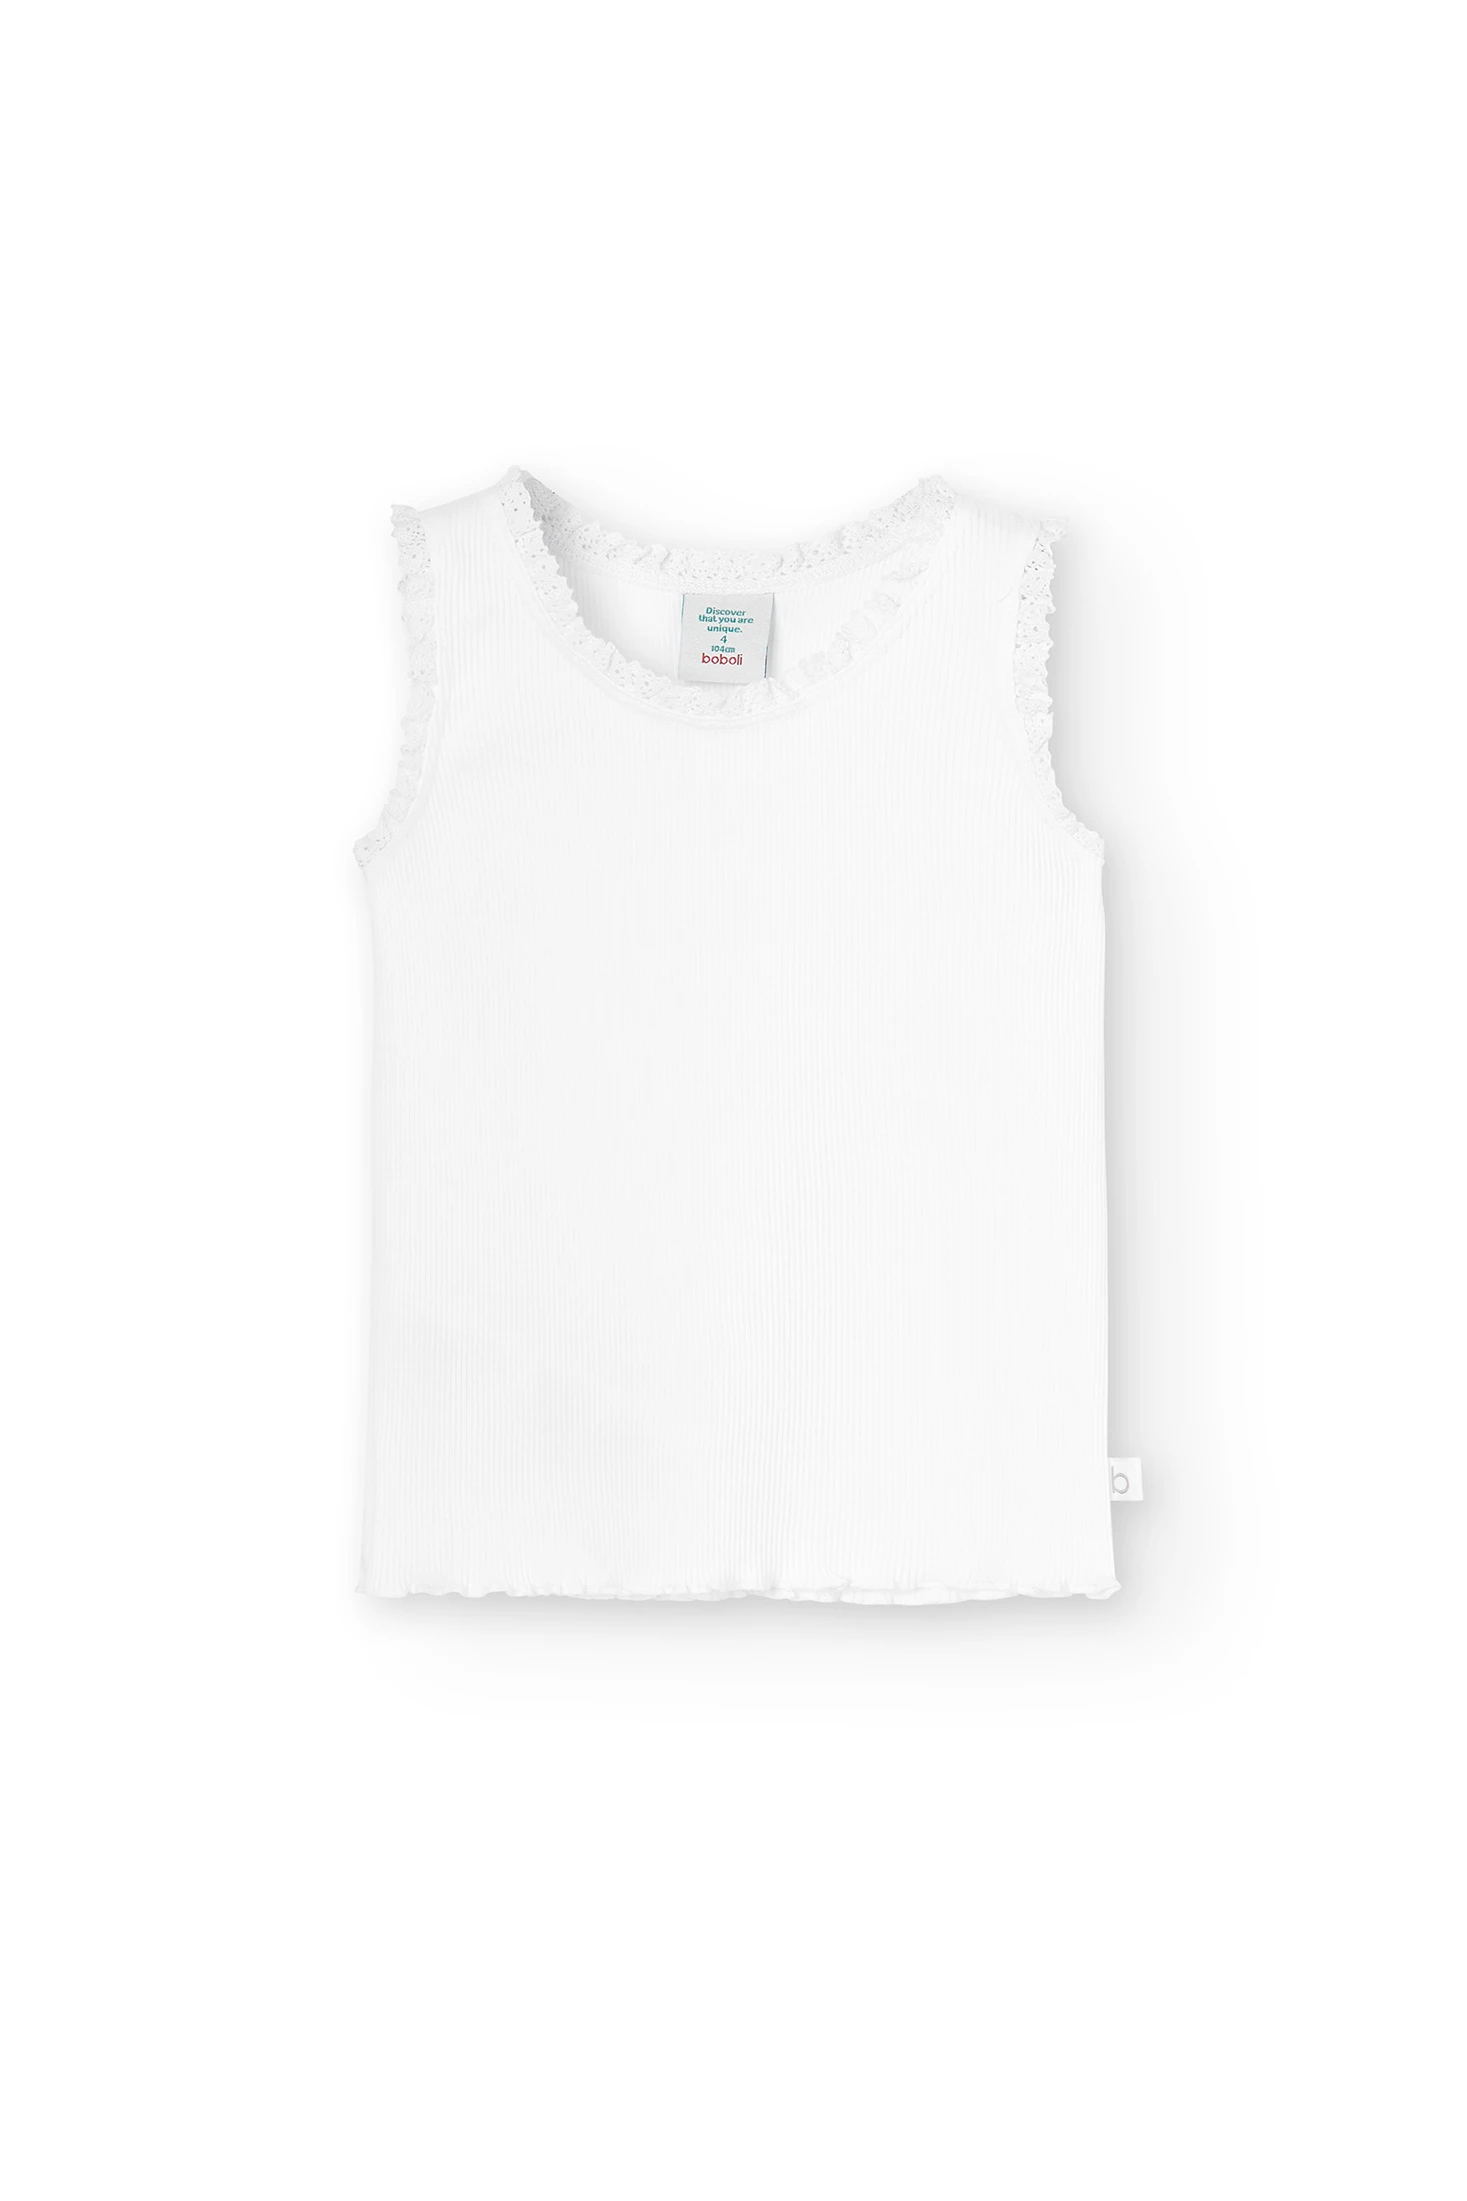 Camiseta canalé niña, diseño liso blanco